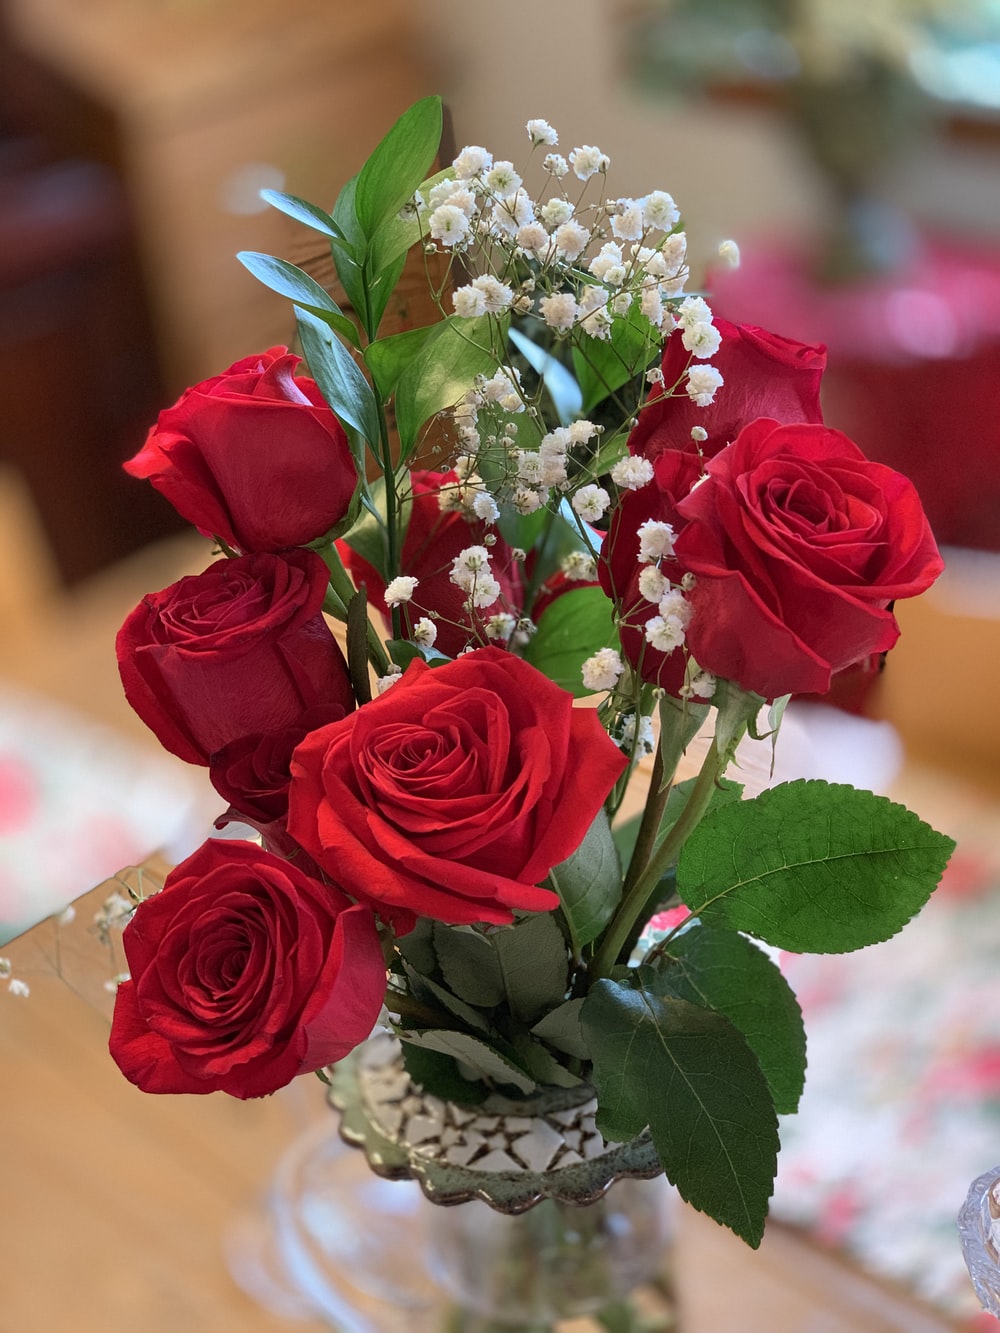 عکس جدید HD از گلدان رز قرمز در فضای دلنشین خانه 